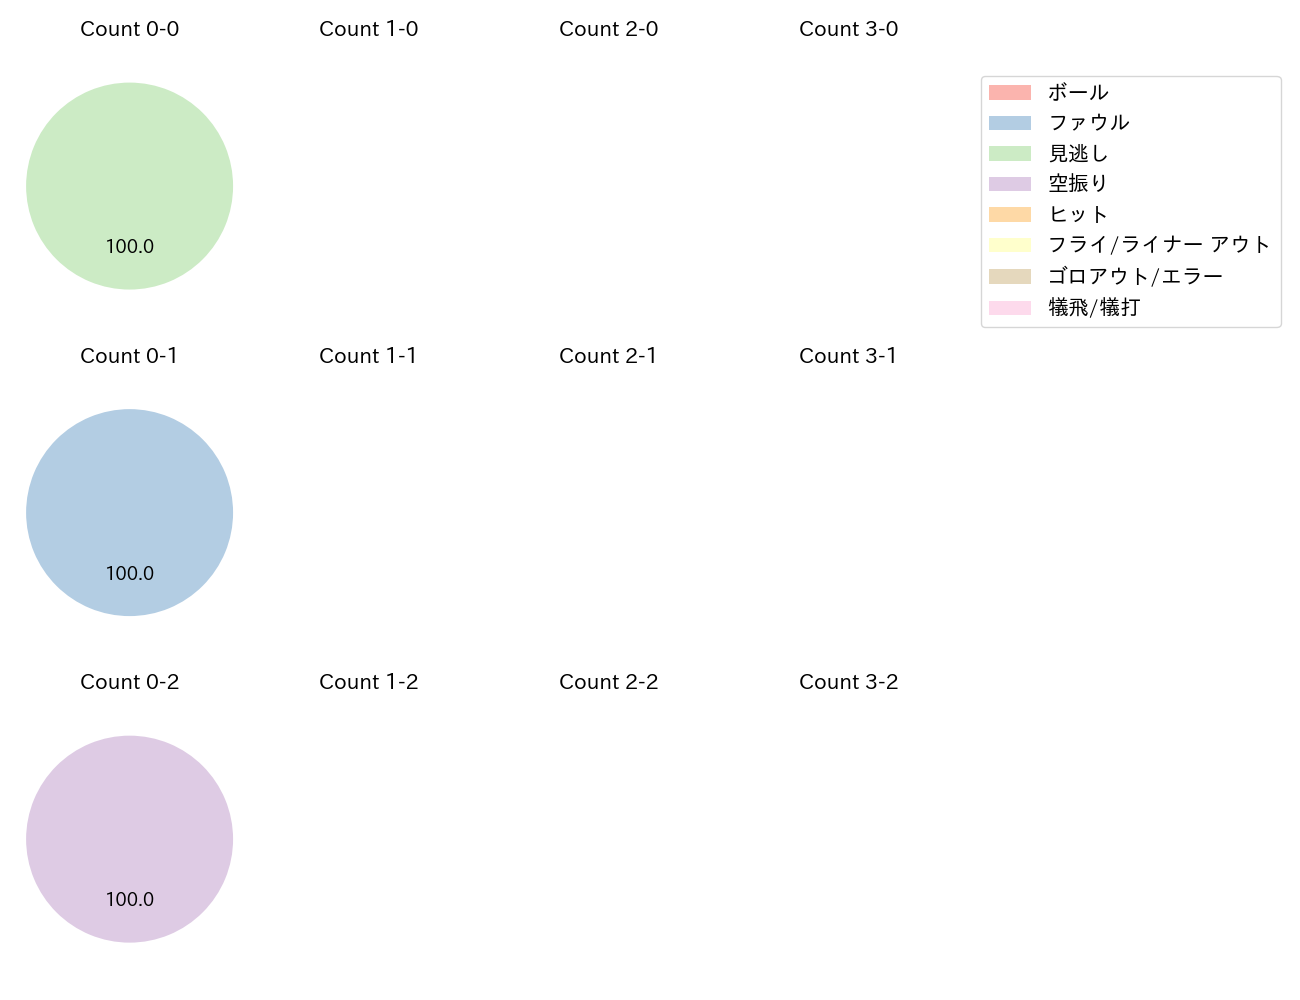 小野寺 暖の球数分布(2021年4月)